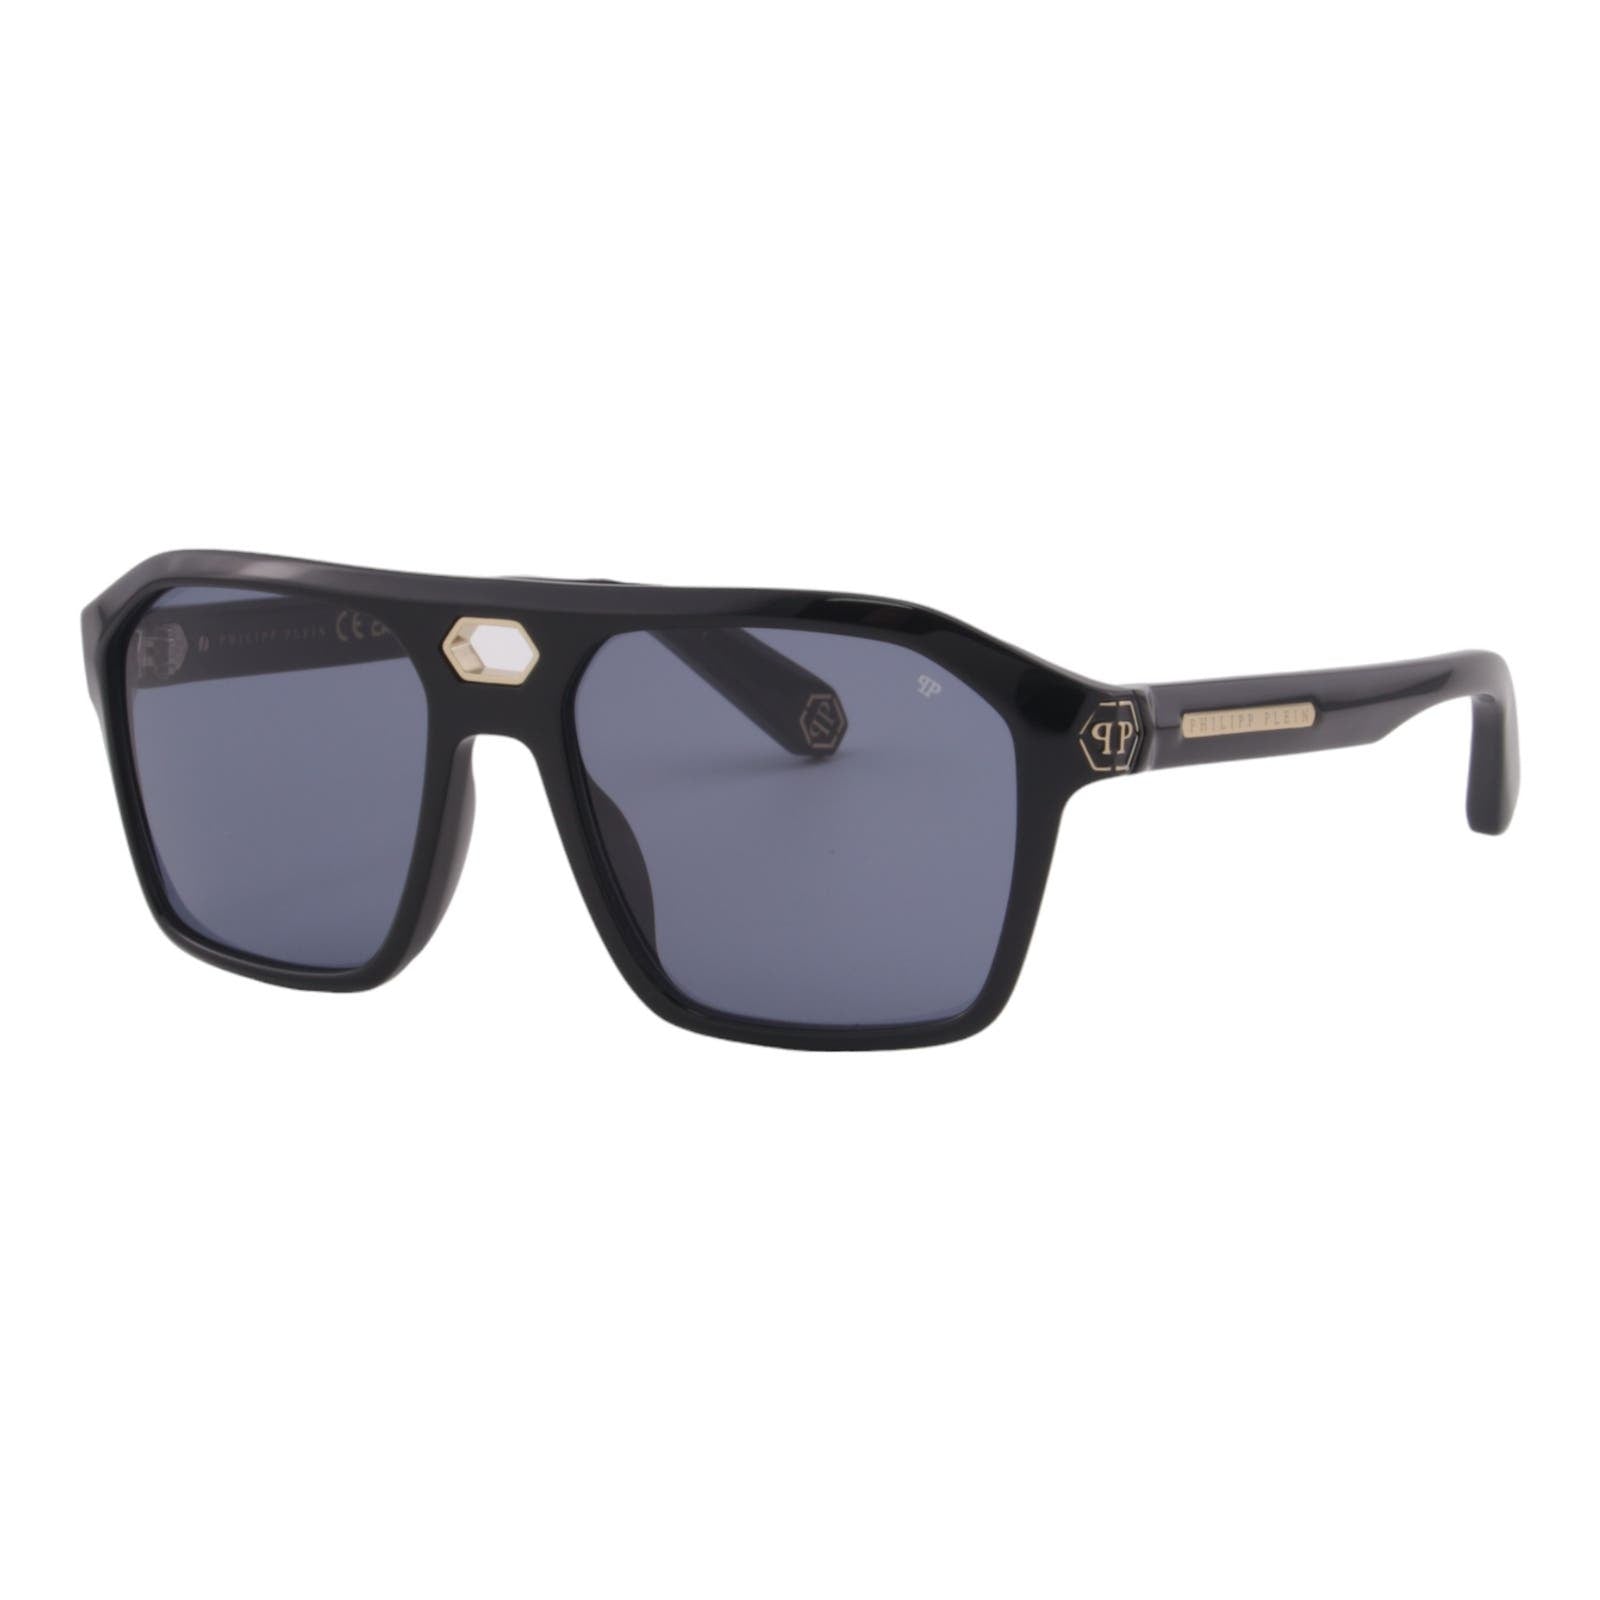 Men Designer Sunglasses SPP072M-0700 Black Square Frame Blue Lens